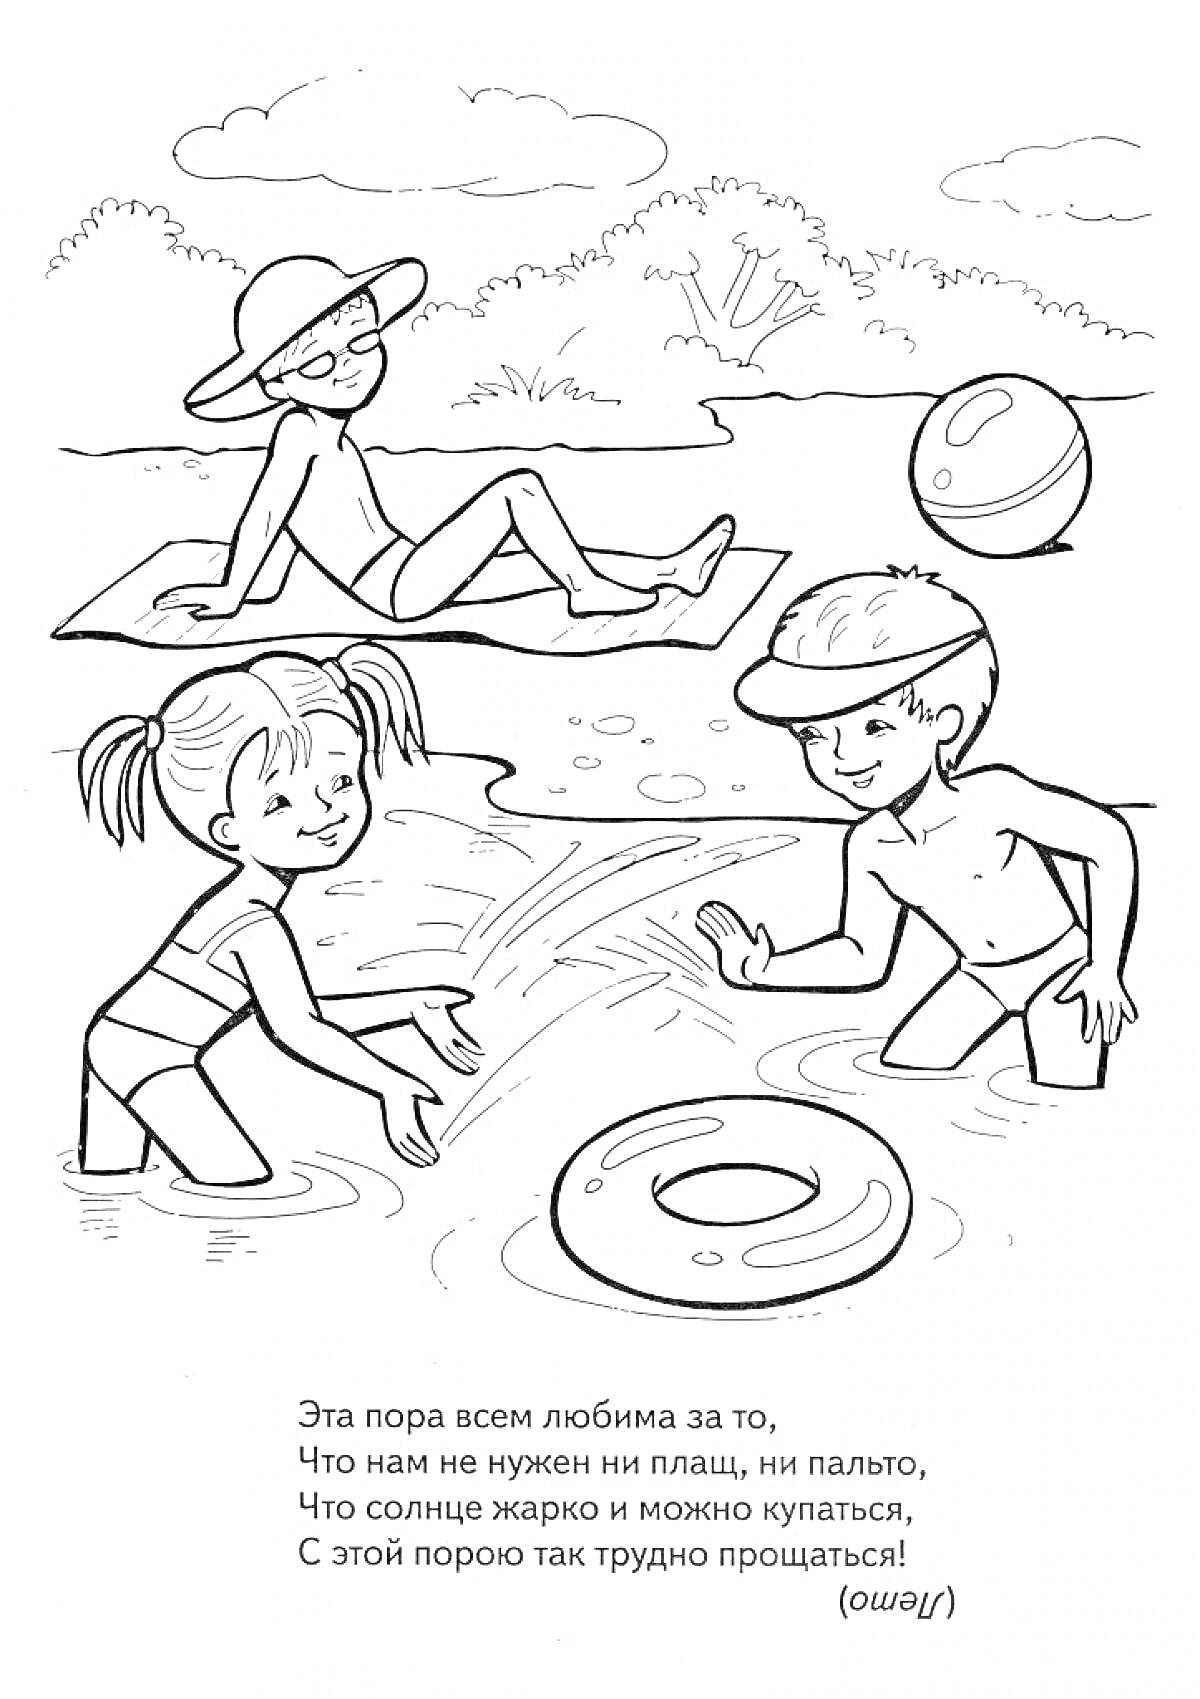 Раскраска Дети играют на пляже: девочка и мальчик в купальниках играют в воде с надувным кругом, женщина в шляпе лежит на песке, пляжный мяч рядом